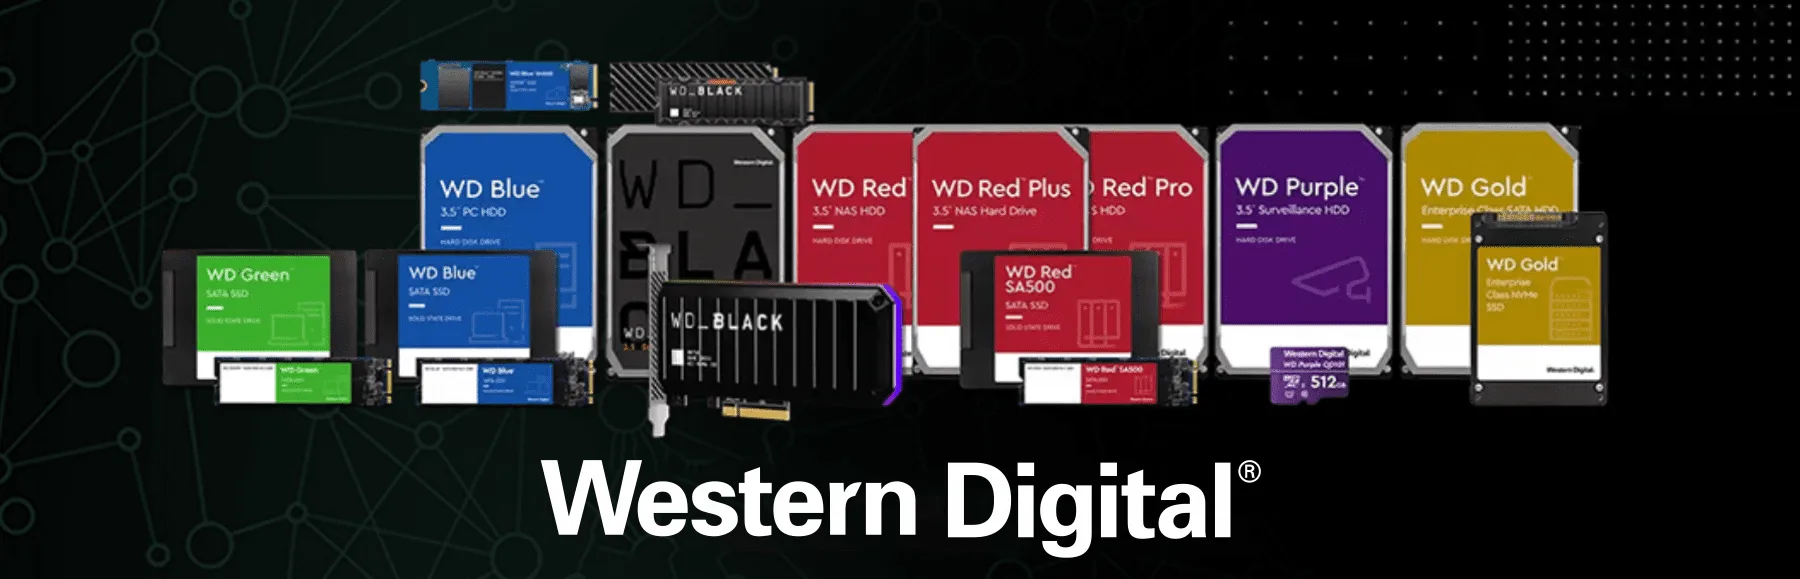 Productos Wester Digital